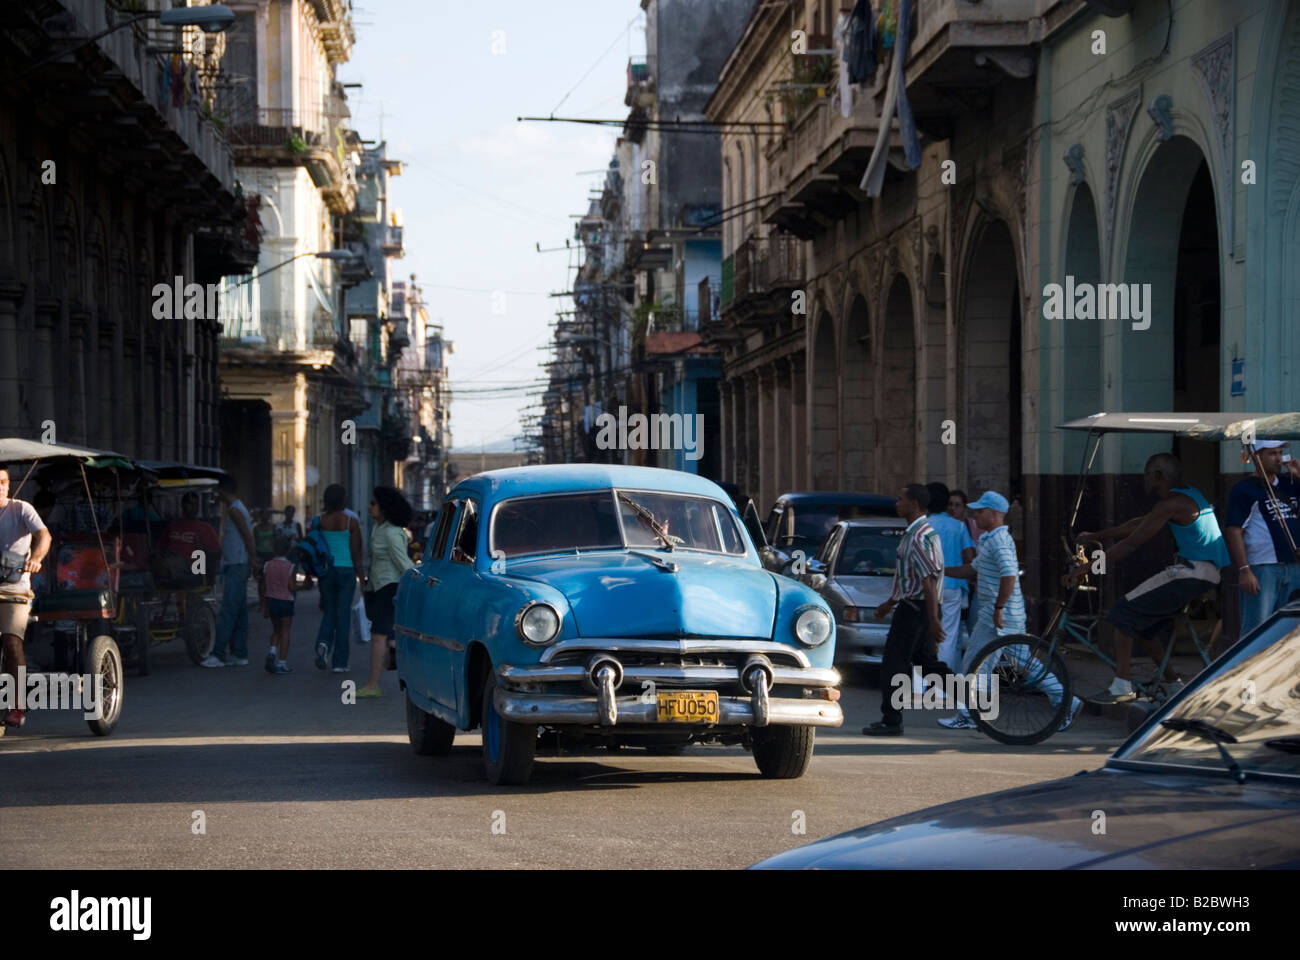 Beschäftigt Straßenszene mit alten amerikanisches Oldtimer und koloniale Architektur in La Habana Vieja Havanna Kuba Stockfoto